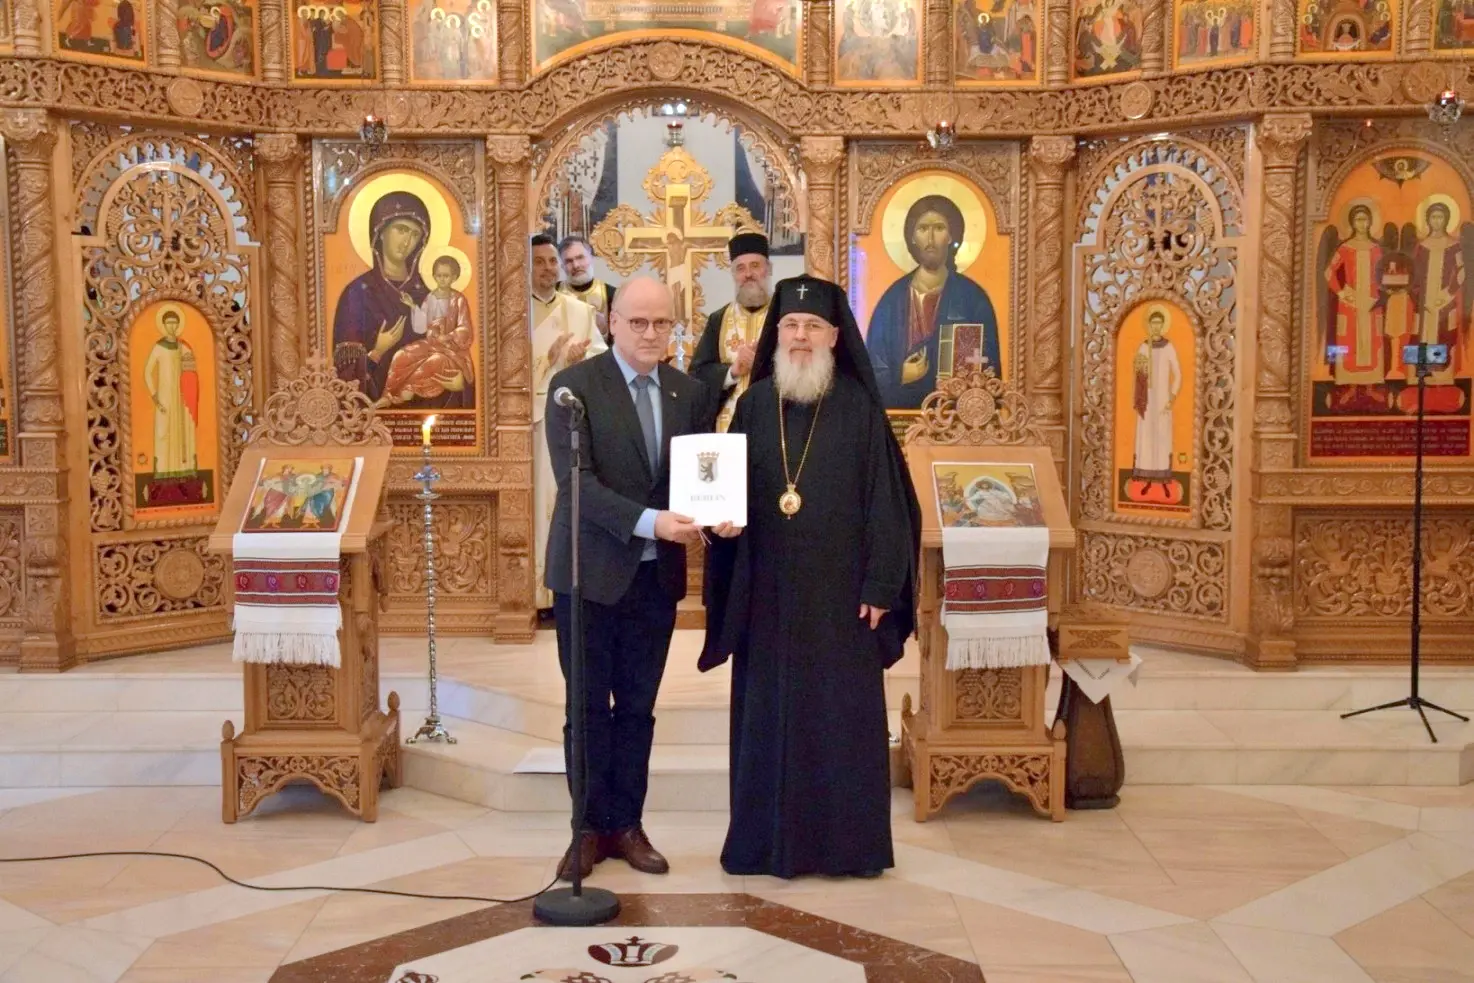 Berlin reconnaît officiellement la Métropole orthodoxe roumaine d’Allemagne comme une collectivité de droit public